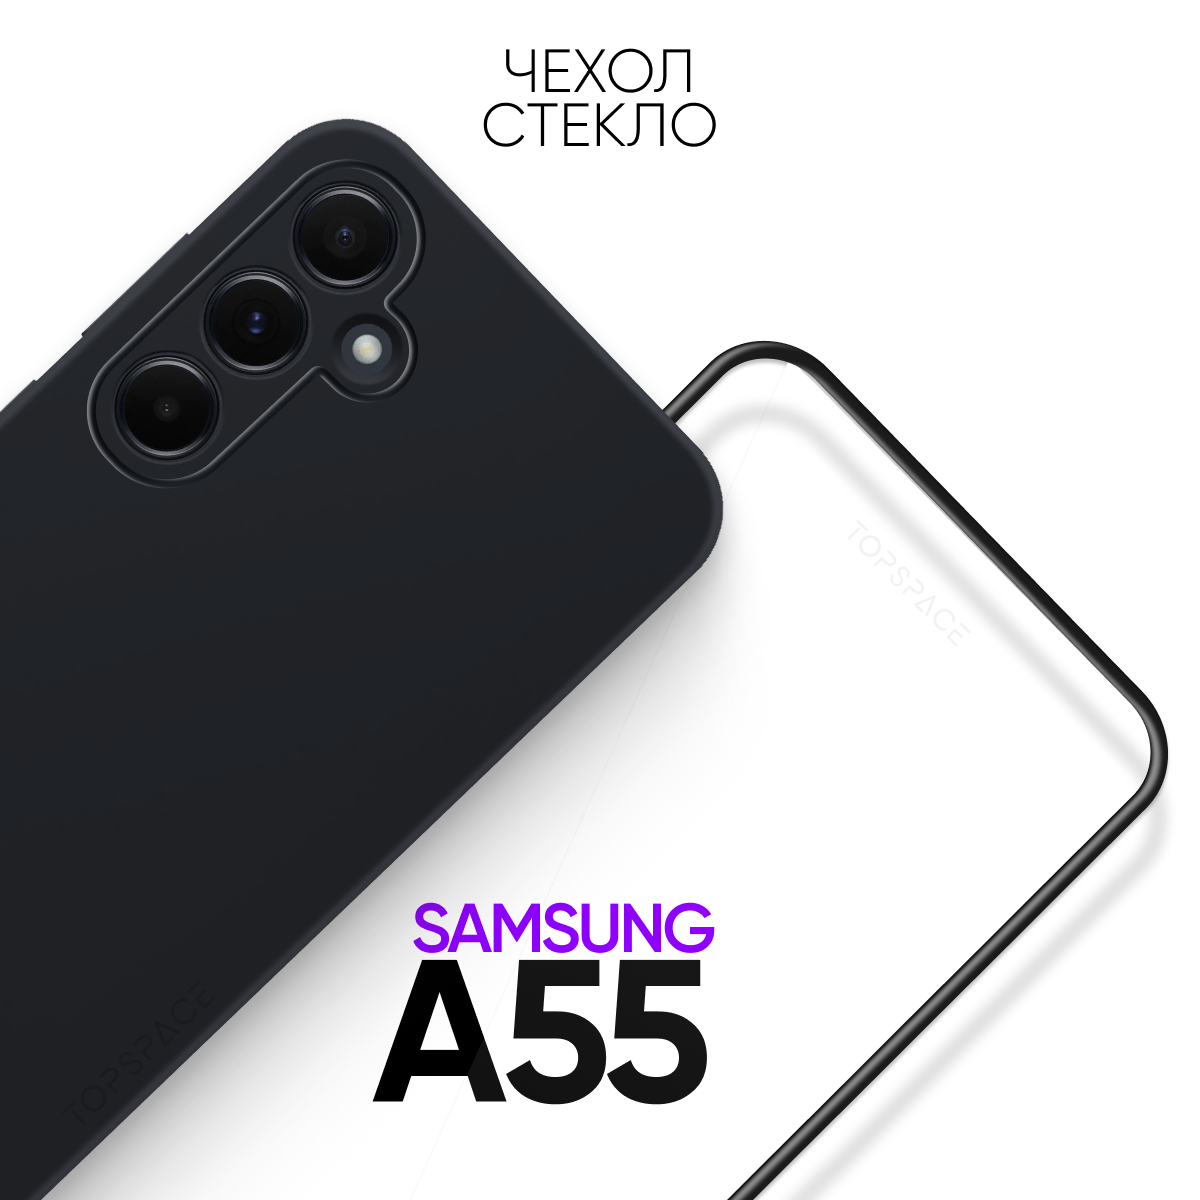 Комплект 2 в 1: Чехол №80 + стекло для Samsung Galaxy A55 / Самсунг Галакси А55 противоударный силиконовый черный матовый black клип-кейс с защитой камеры